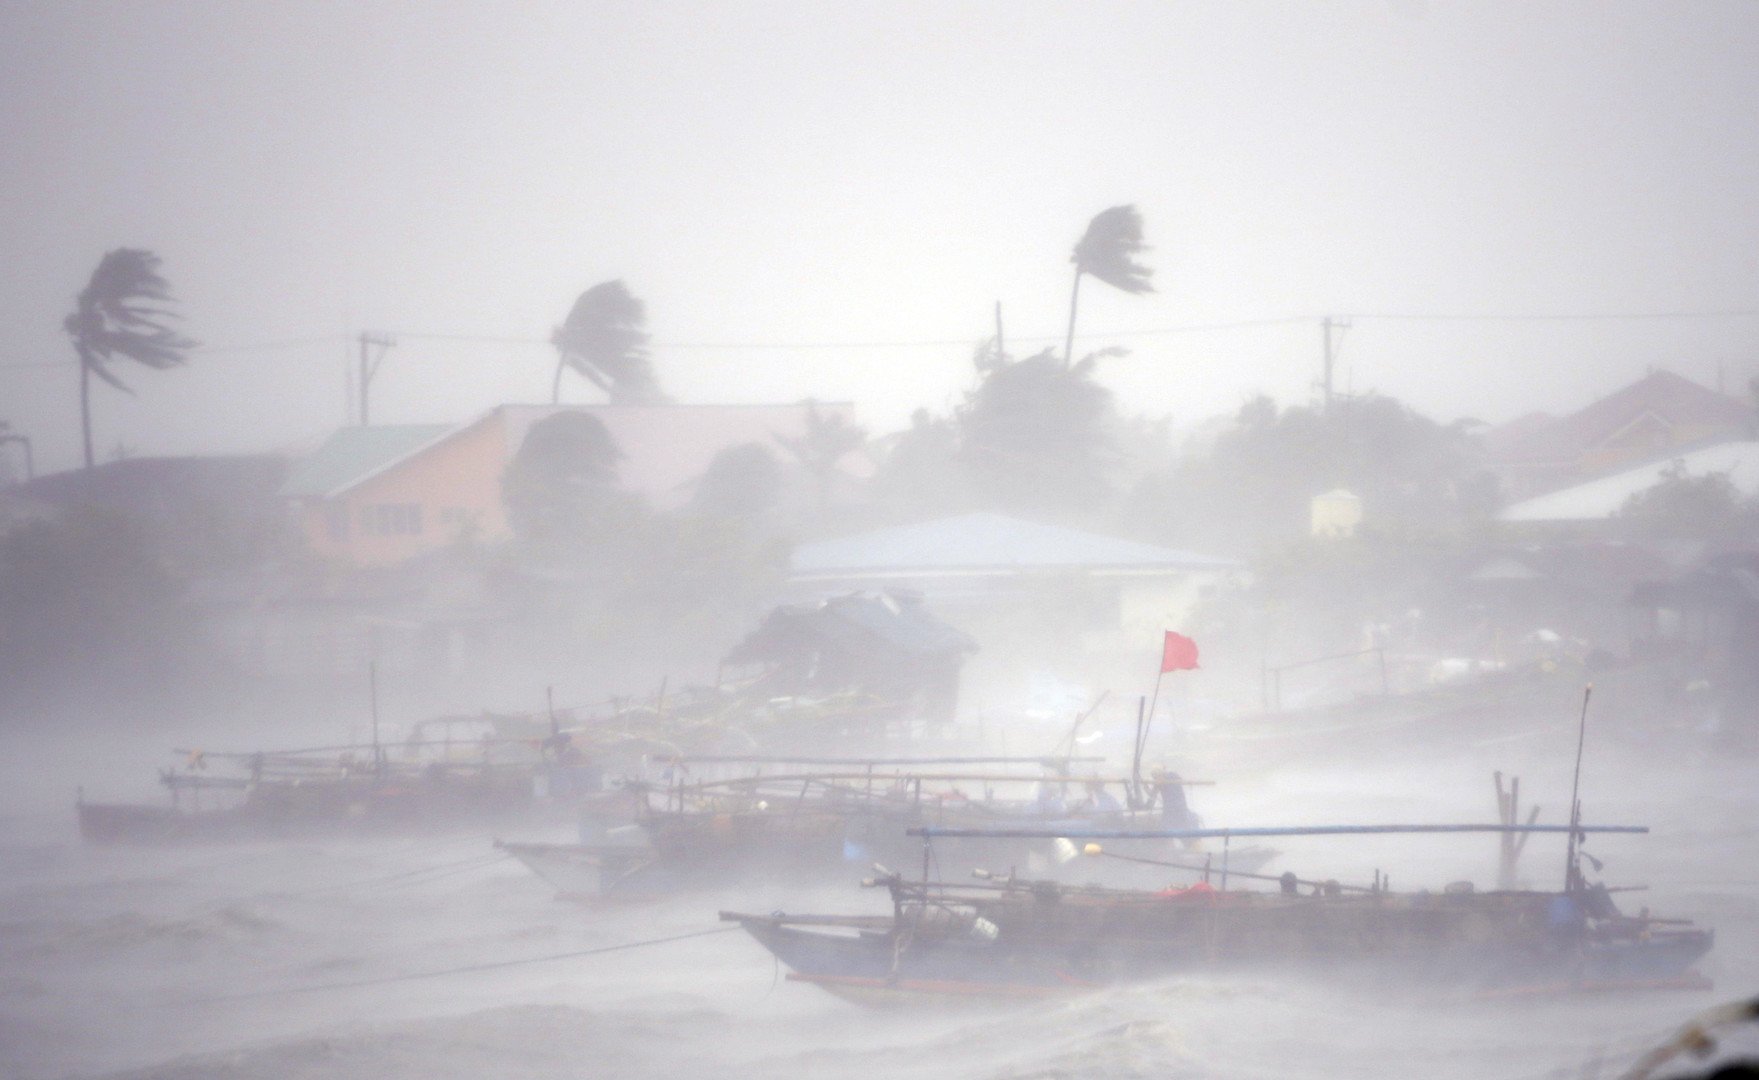 قوارب الصيد في قلب إعصار راماسون الذي ضرب مدينة كافيت جنوب غرب مانيلا بالفلبين، 16 يوليو/تموز